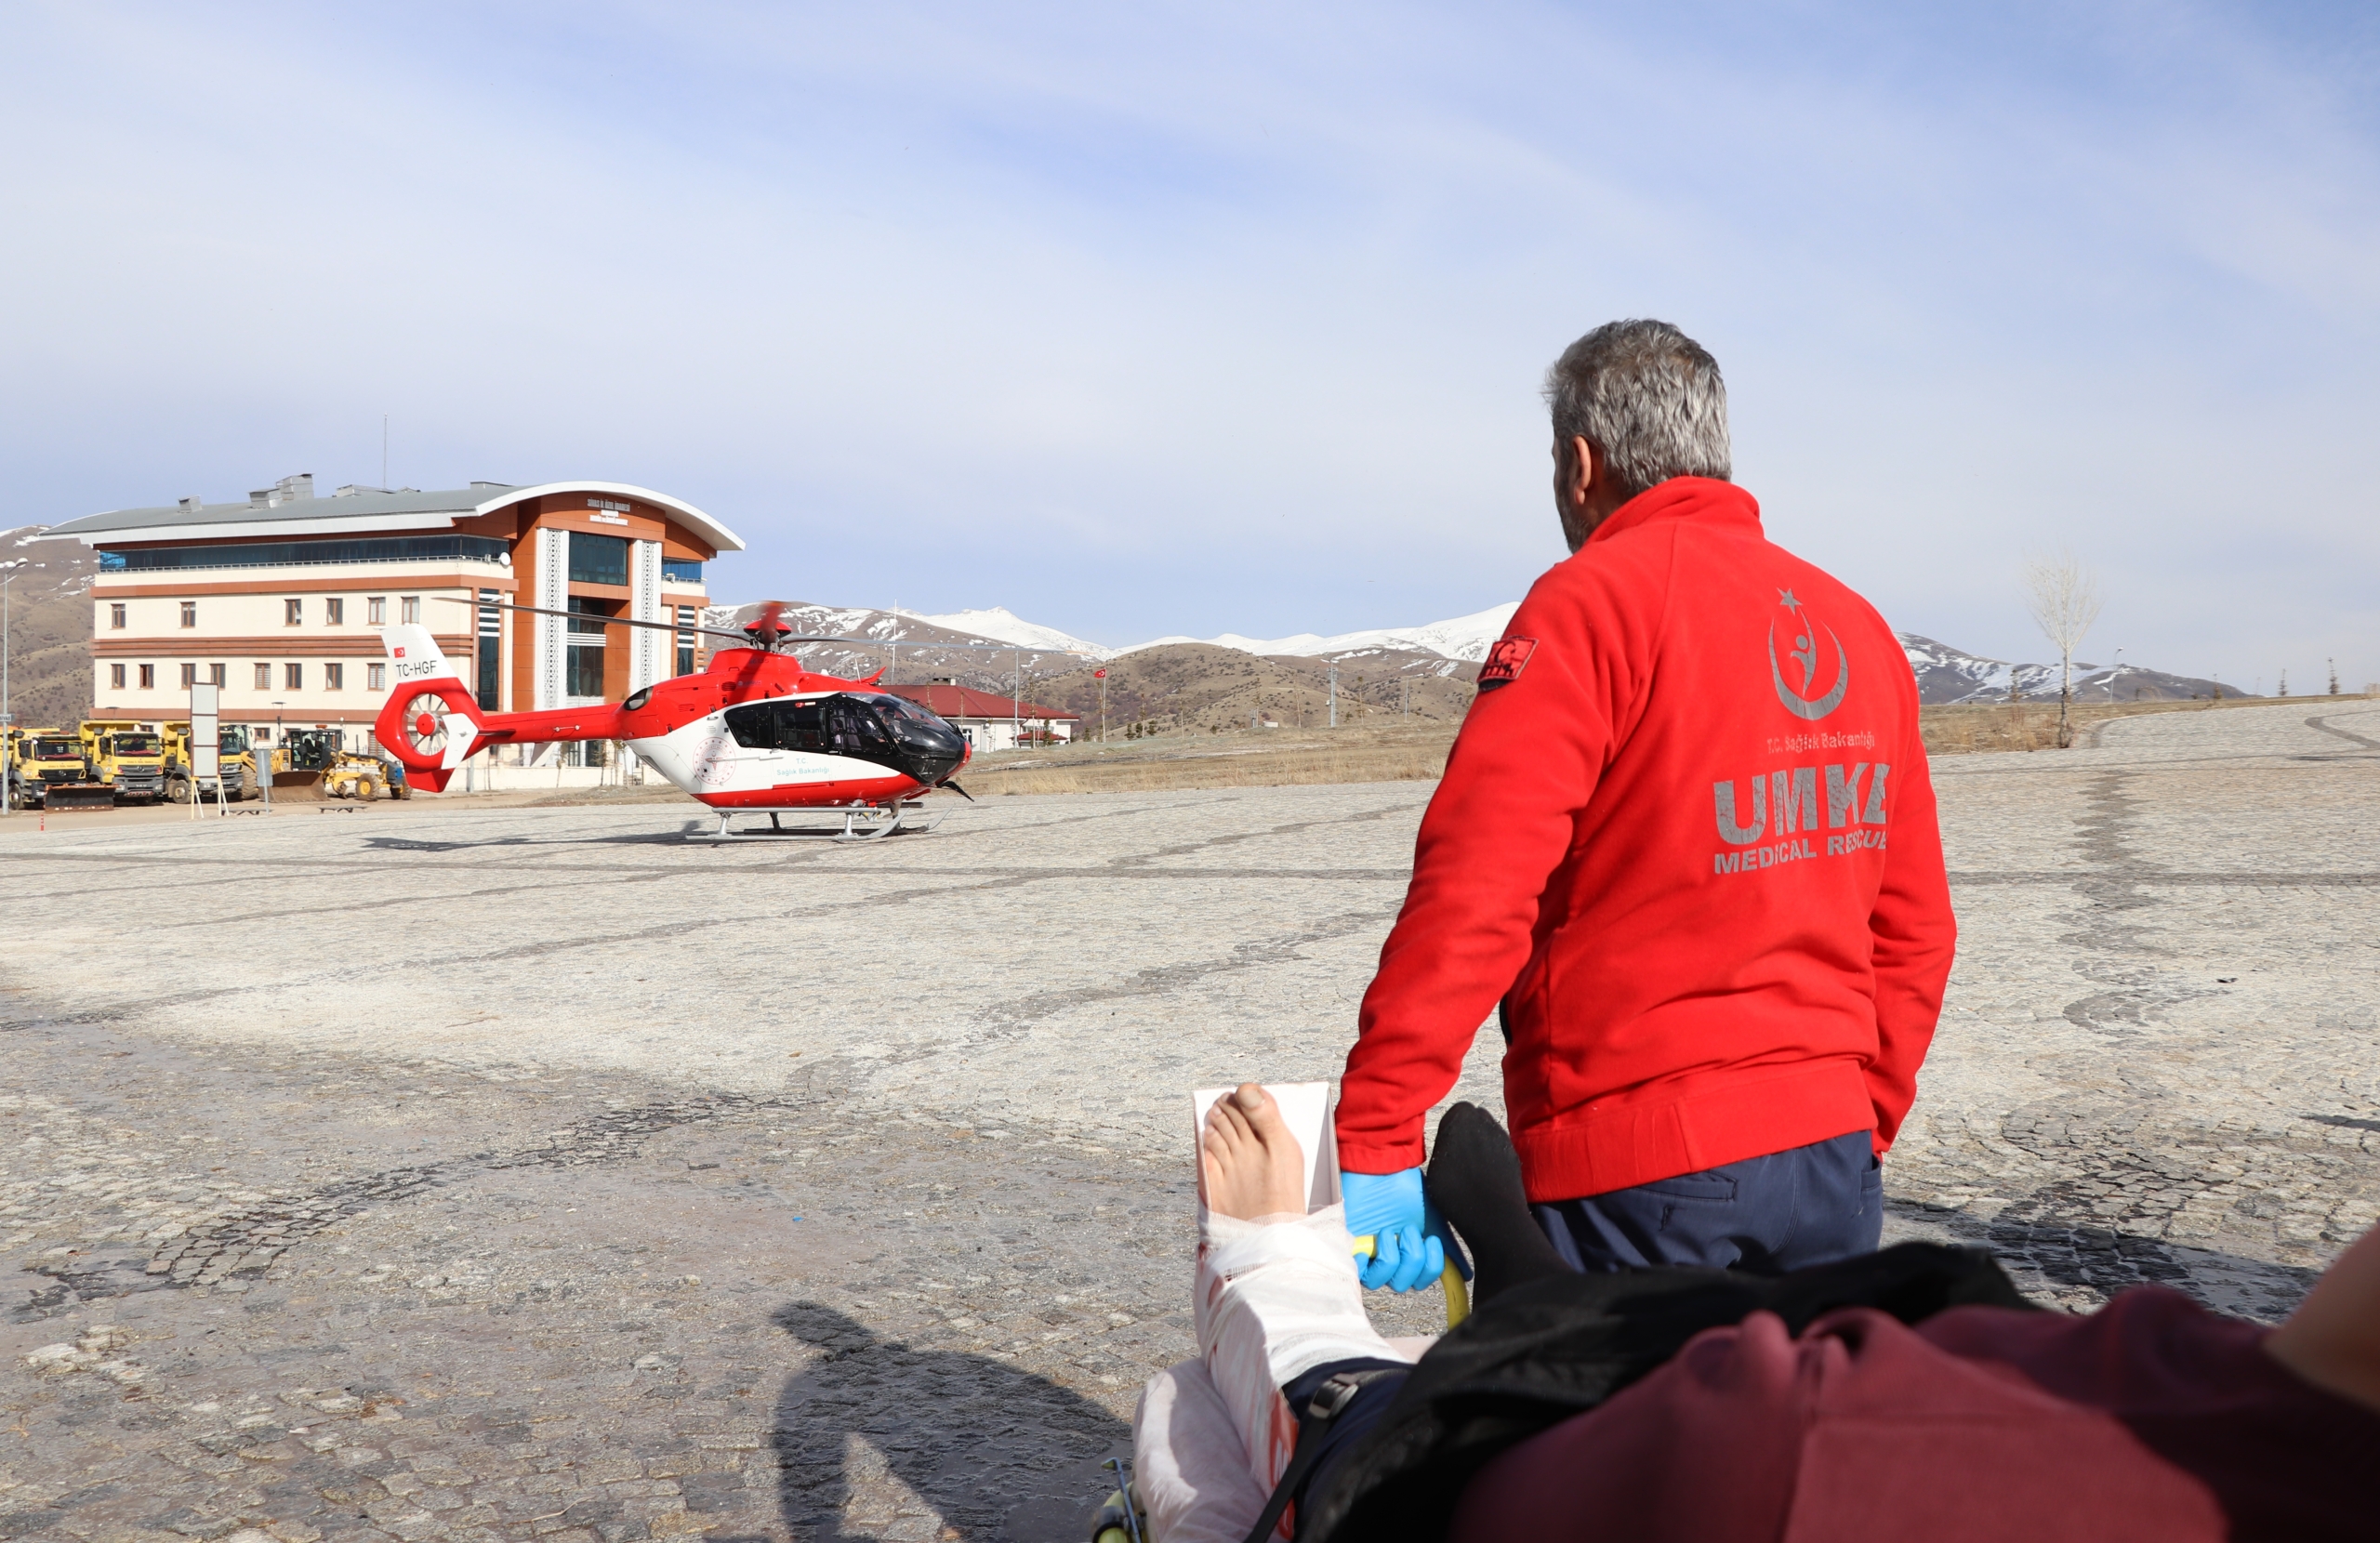 sivasta-kayak-yaparken-bacagi-kirilan-kisi-ambulans-helikopterle-hastaneye-ulastirildi-l1LKIwjP.jpg